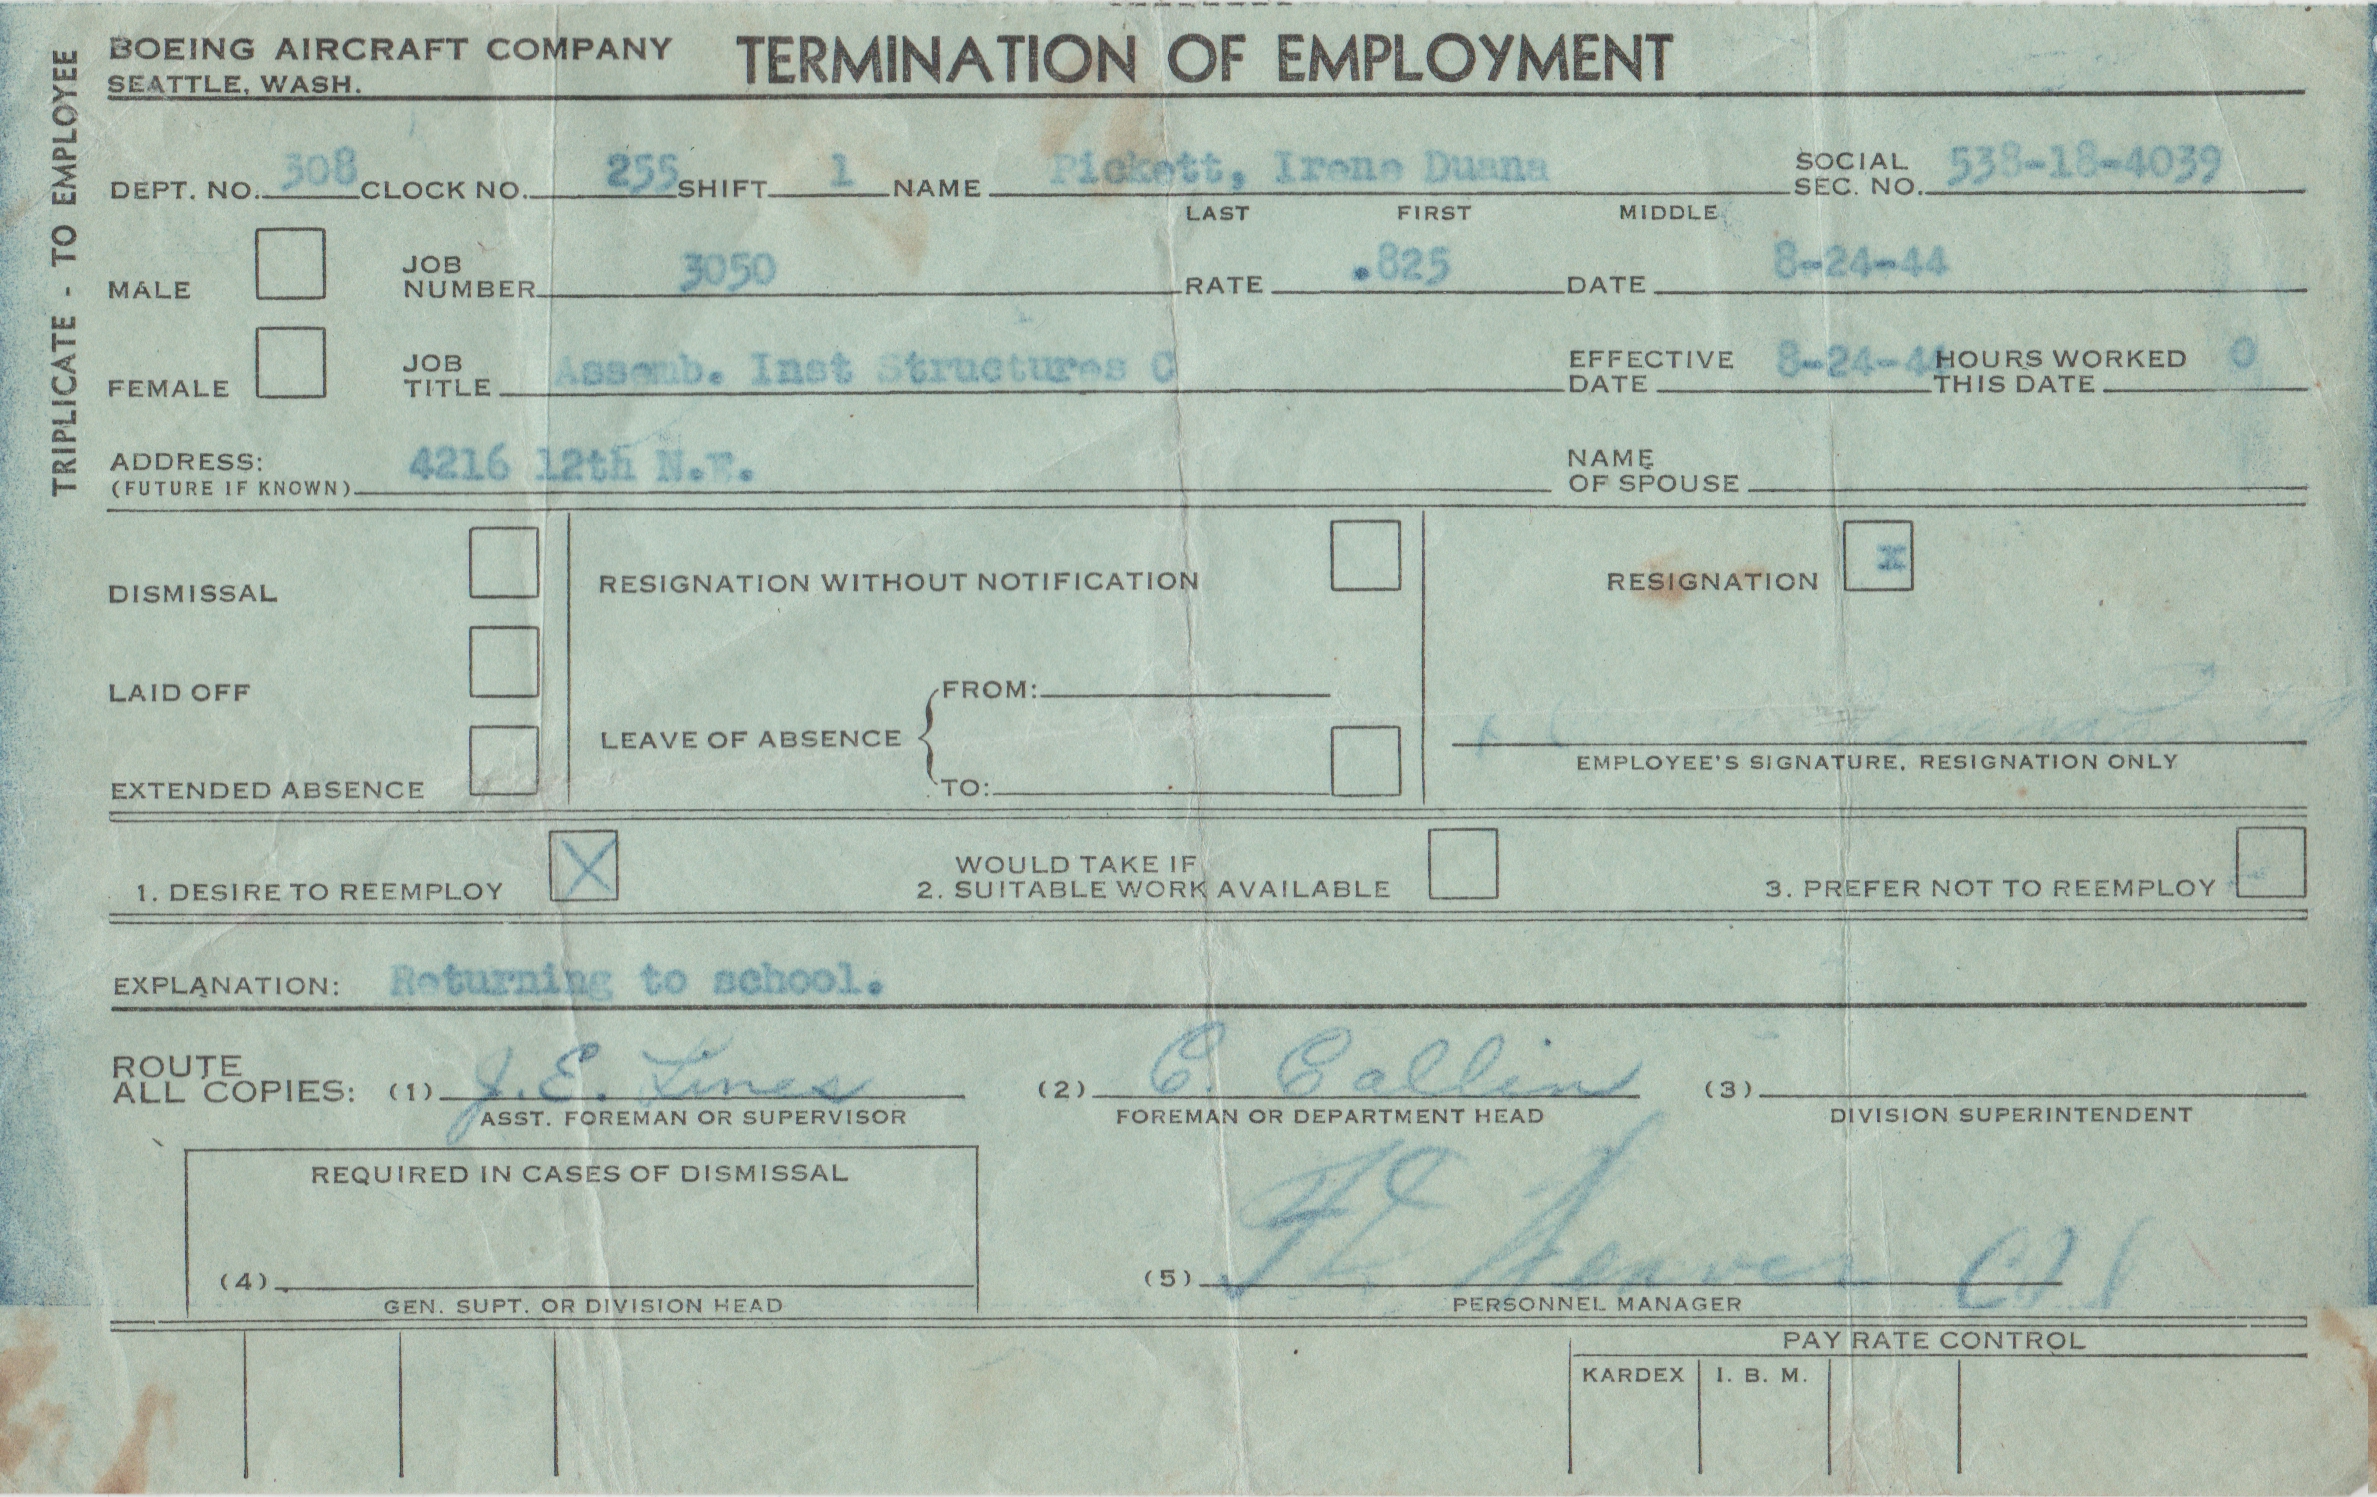 1944-08-24 - Boeing - Dwana - Employment Resignation to Return to school, desired future reemployment.jpg